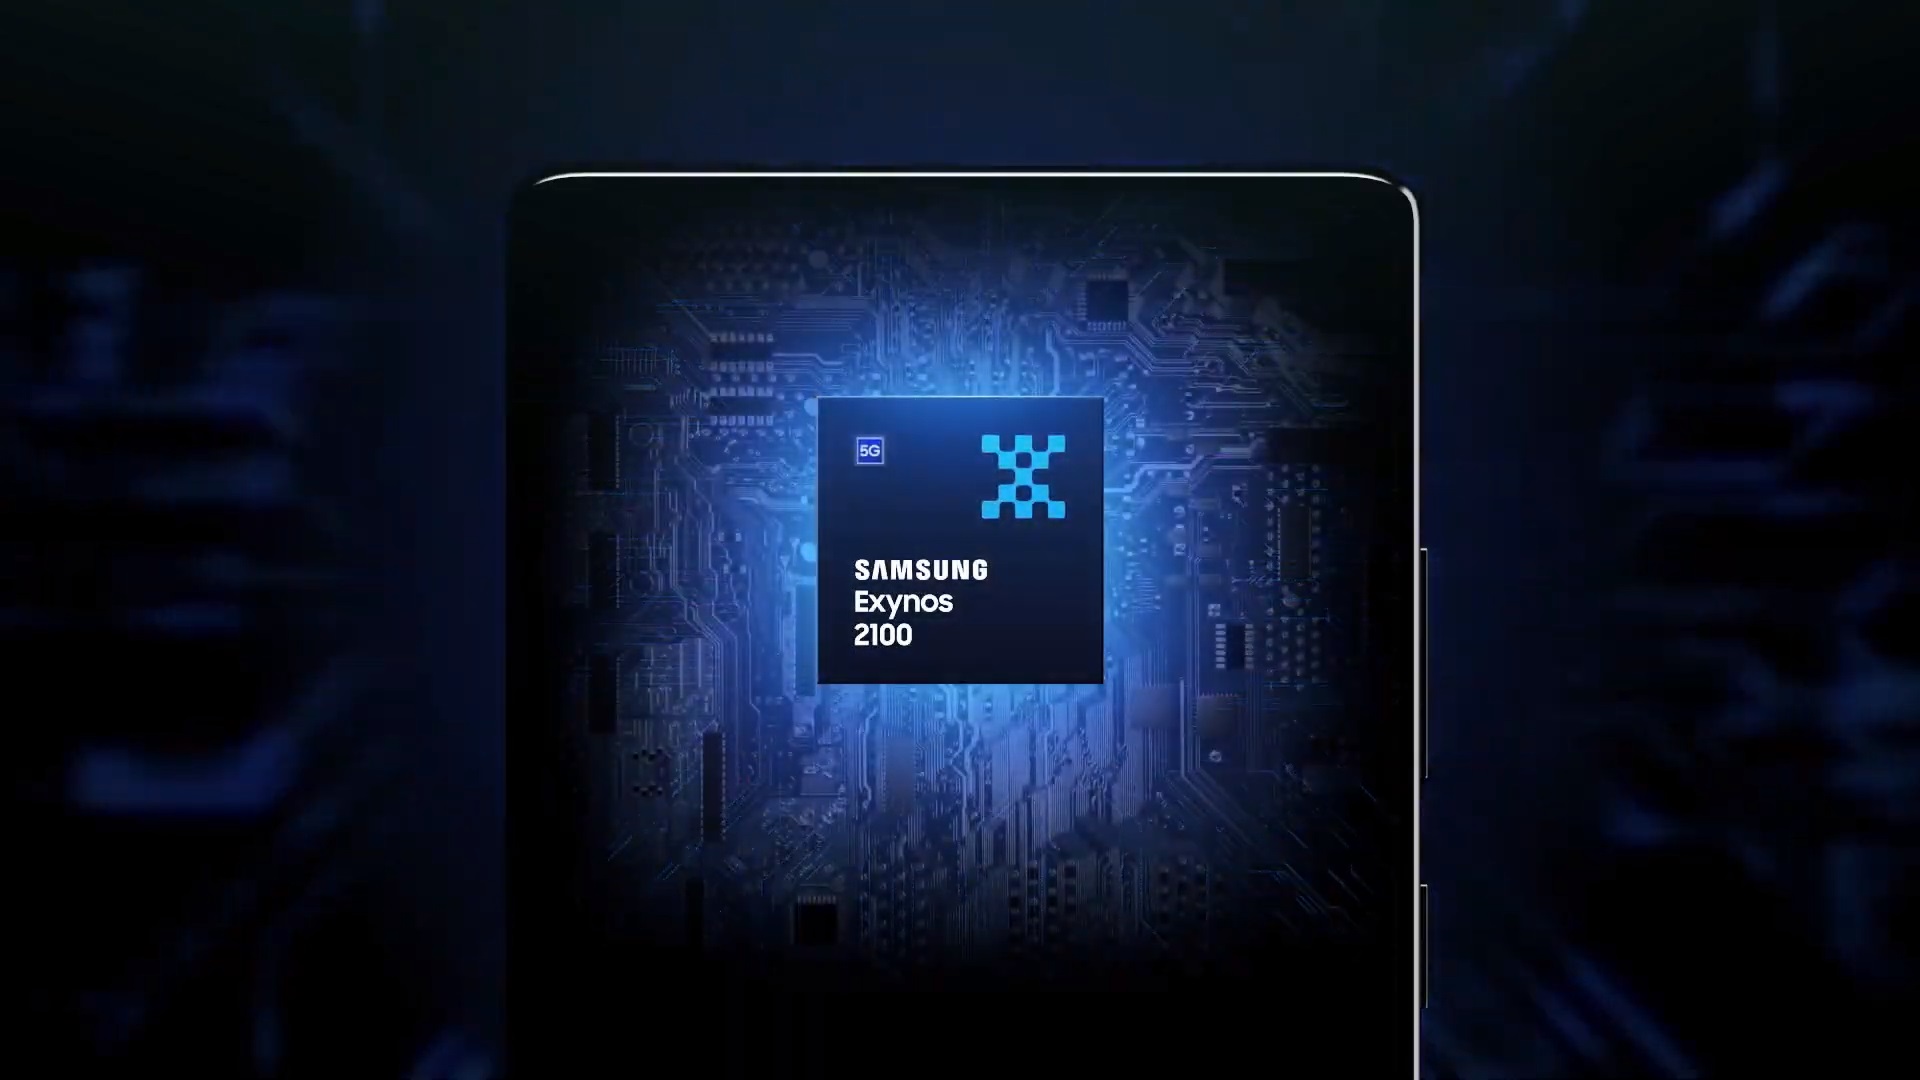 procesor Samsung Exynos 2100 processor